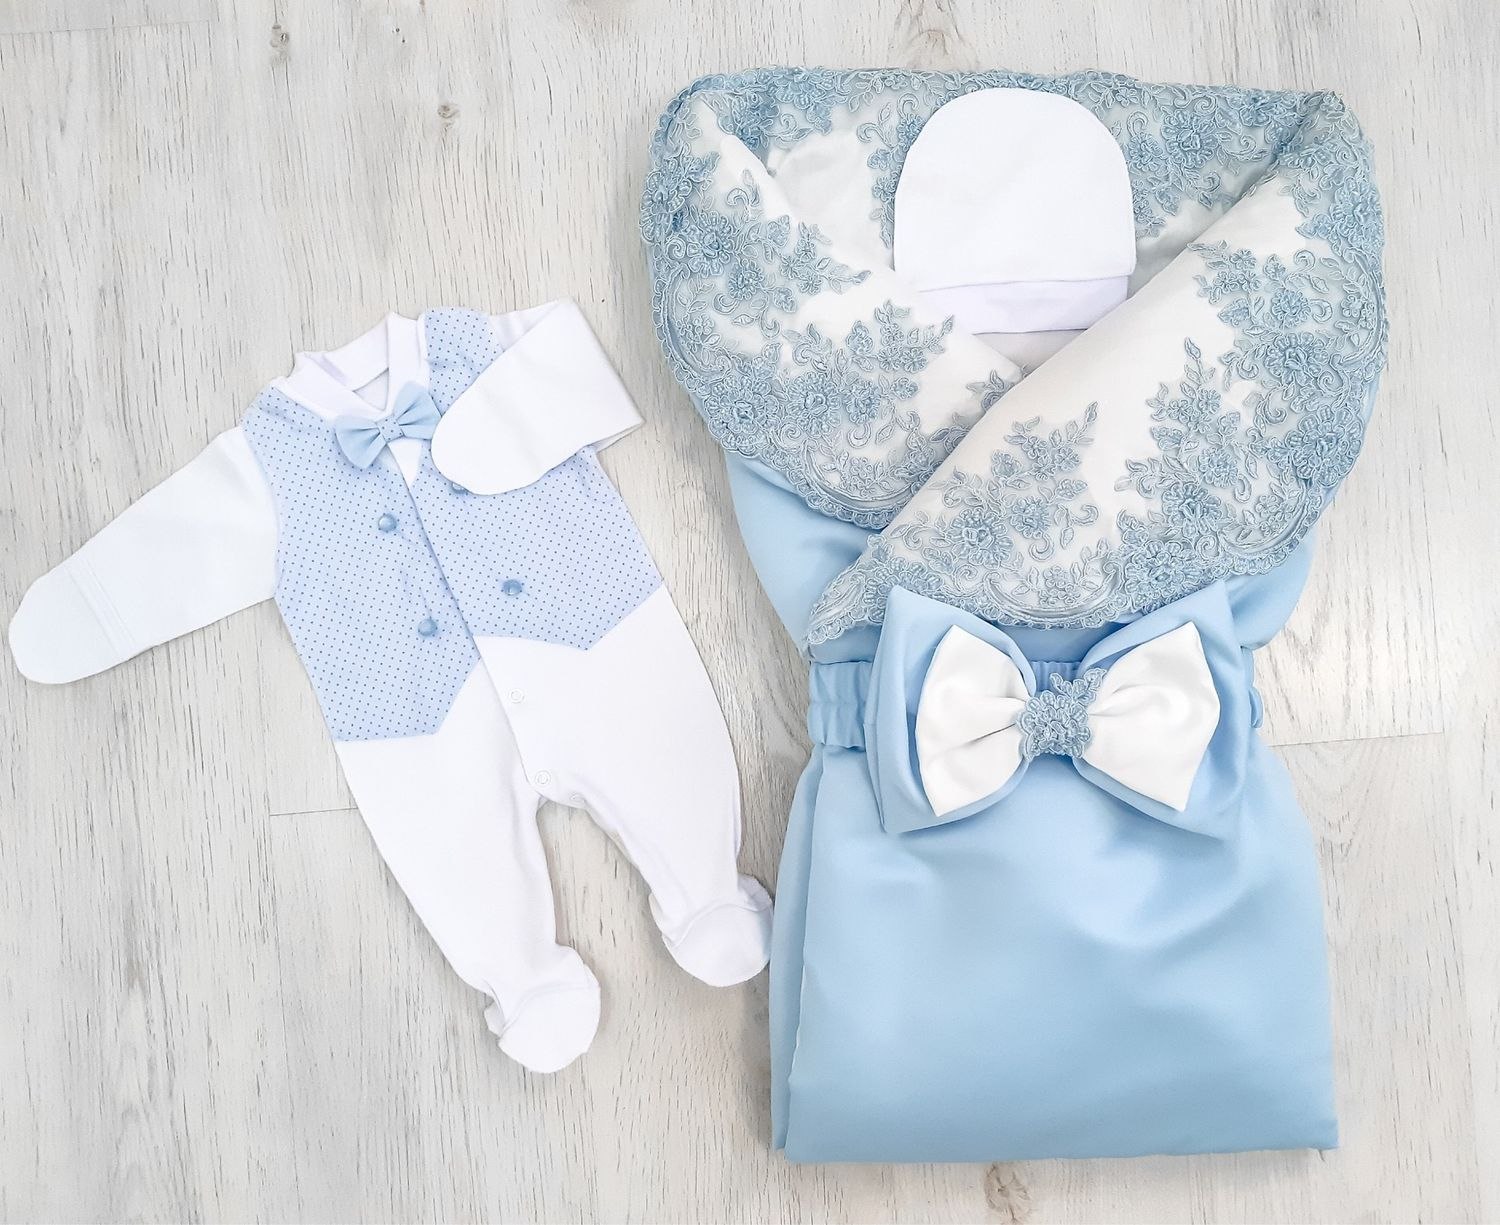 Одежда для новорожденных на выписку из роддома весной